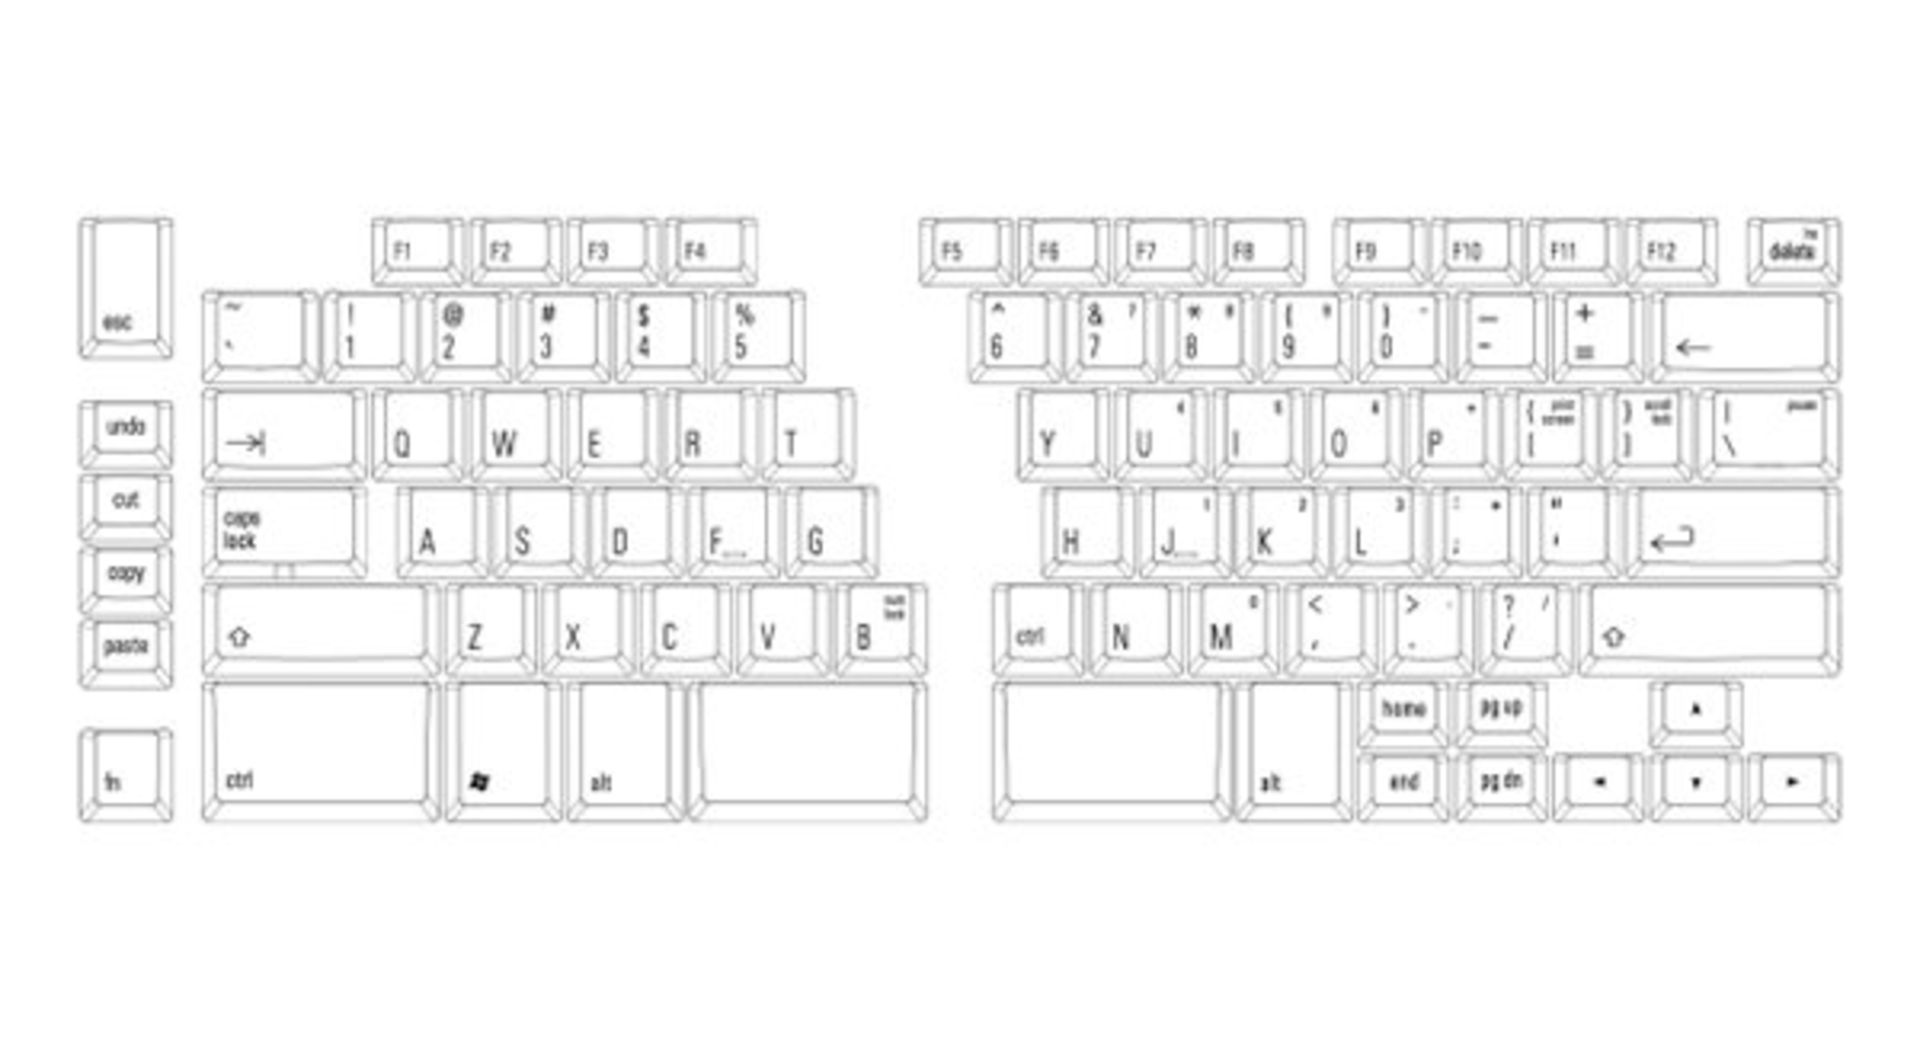 matias-mechanical-ergo-keyboard-1